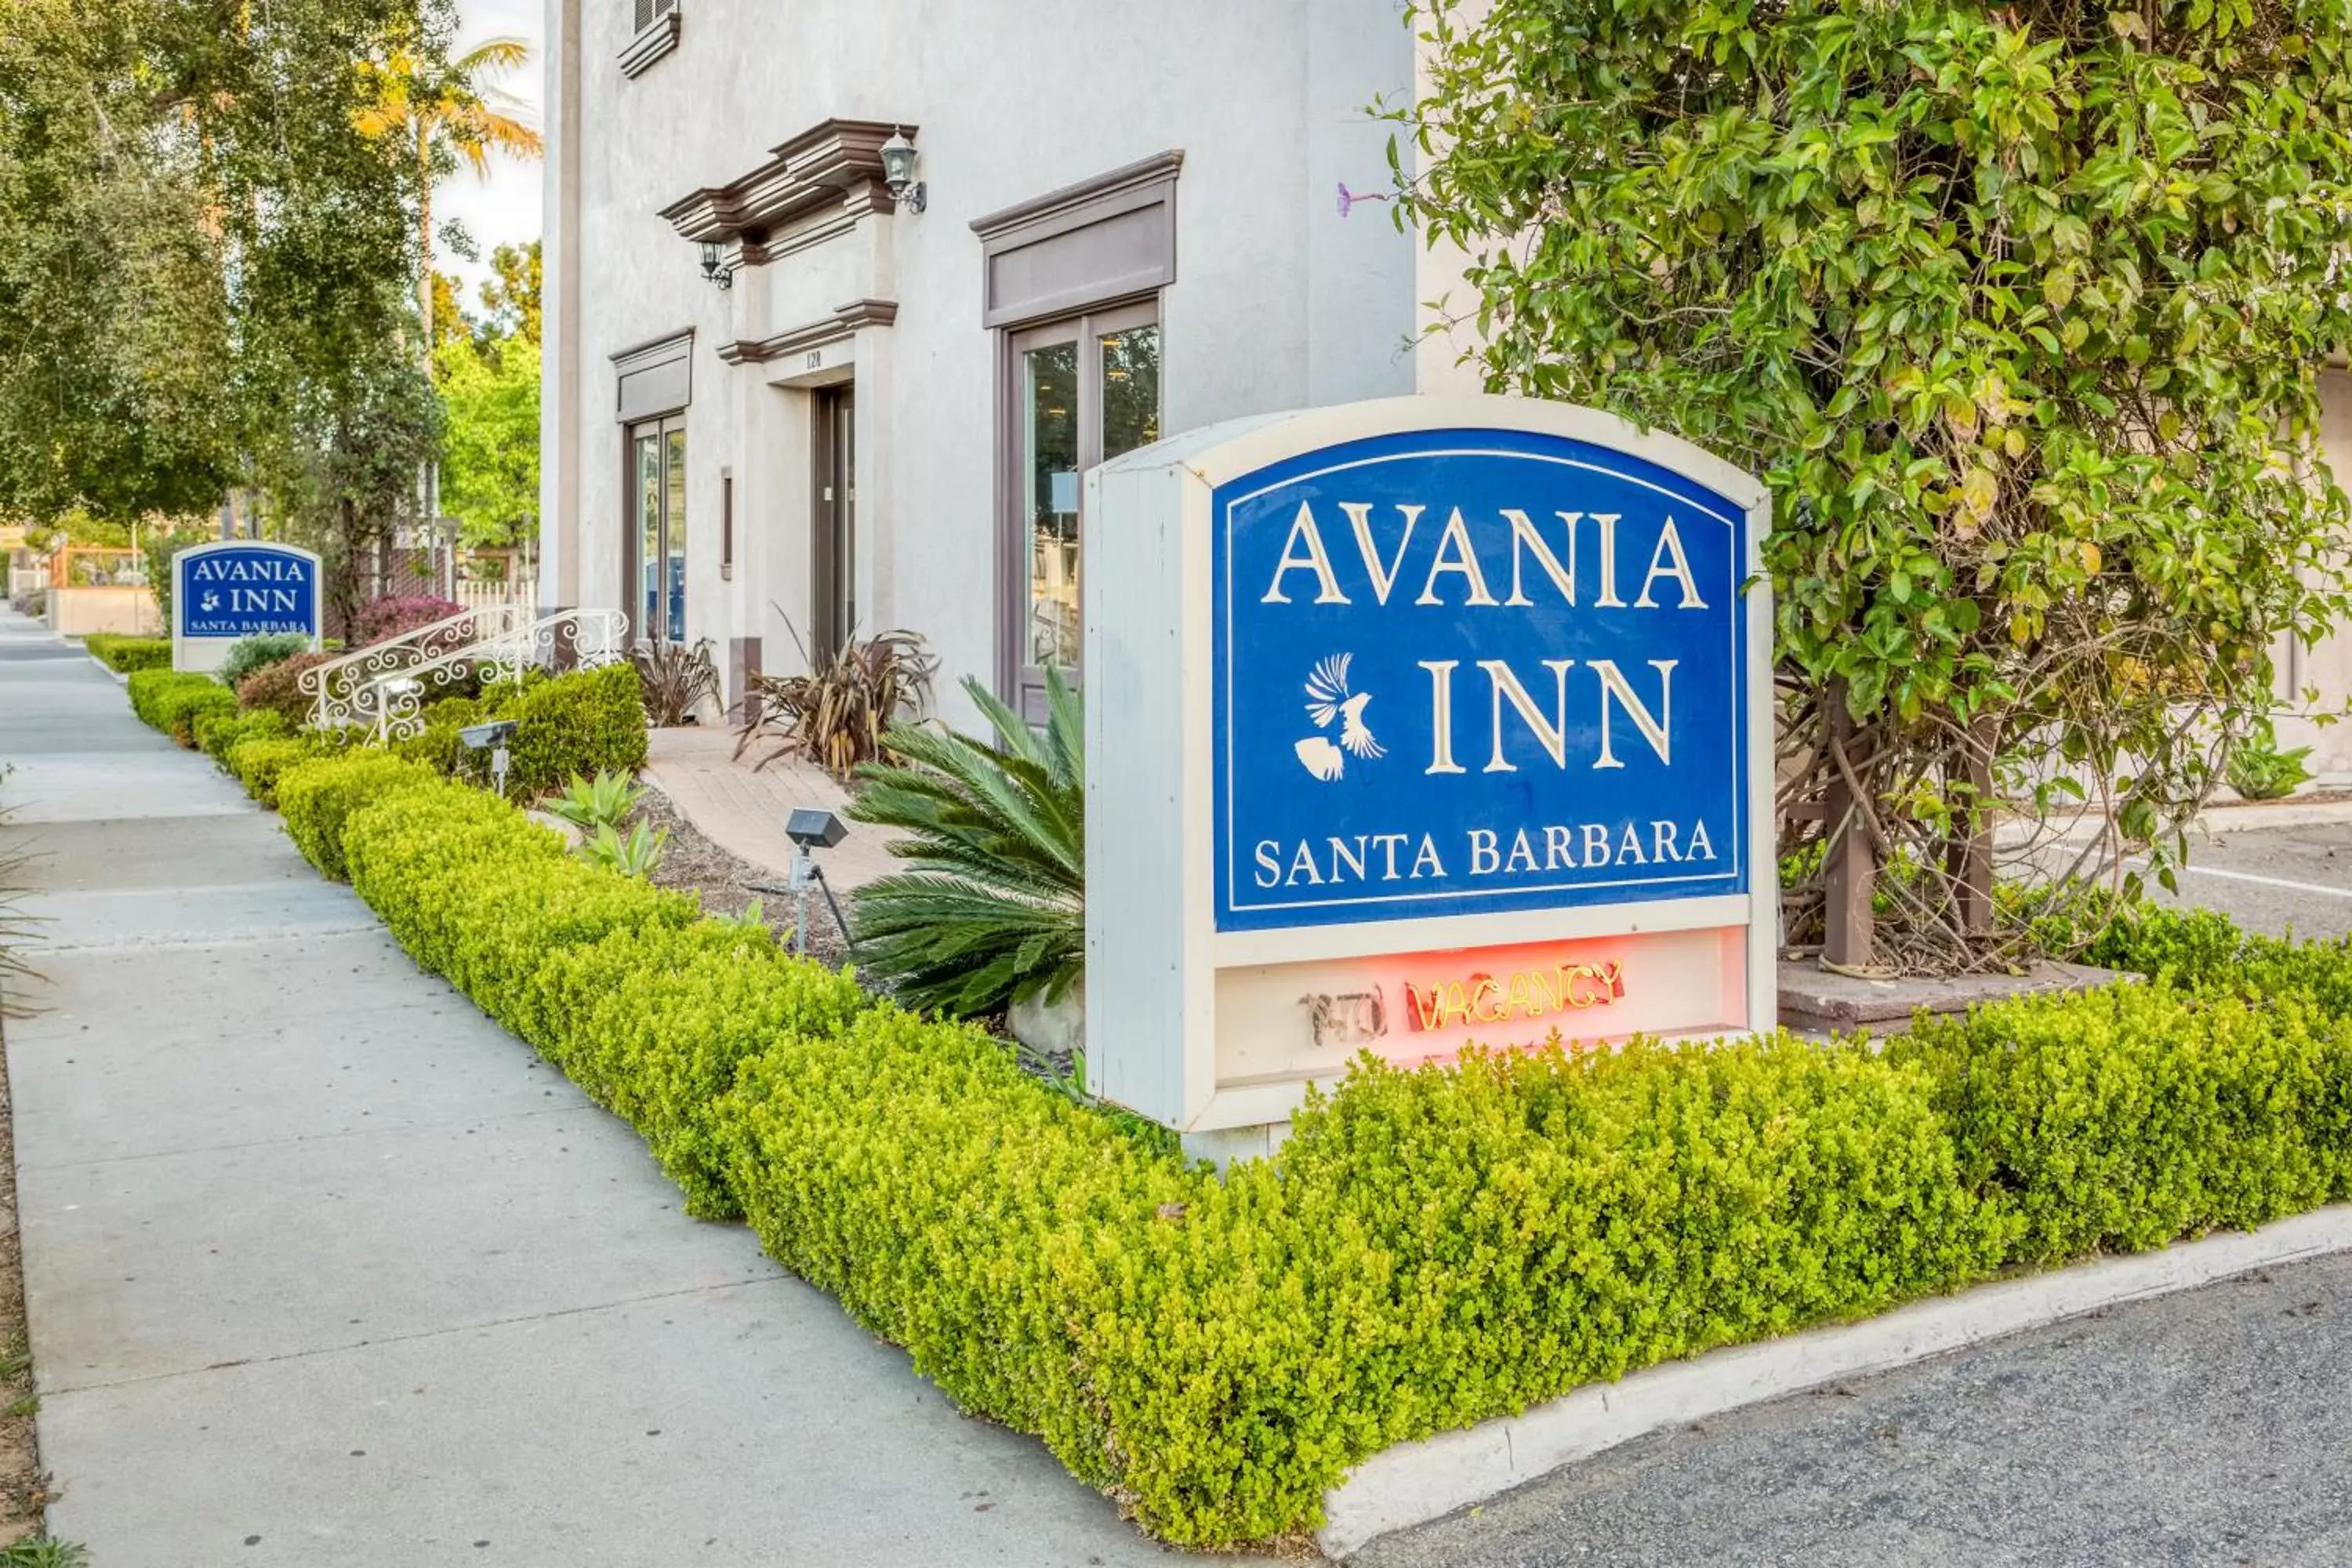 Property building in Avania Inn of Santa Barbara